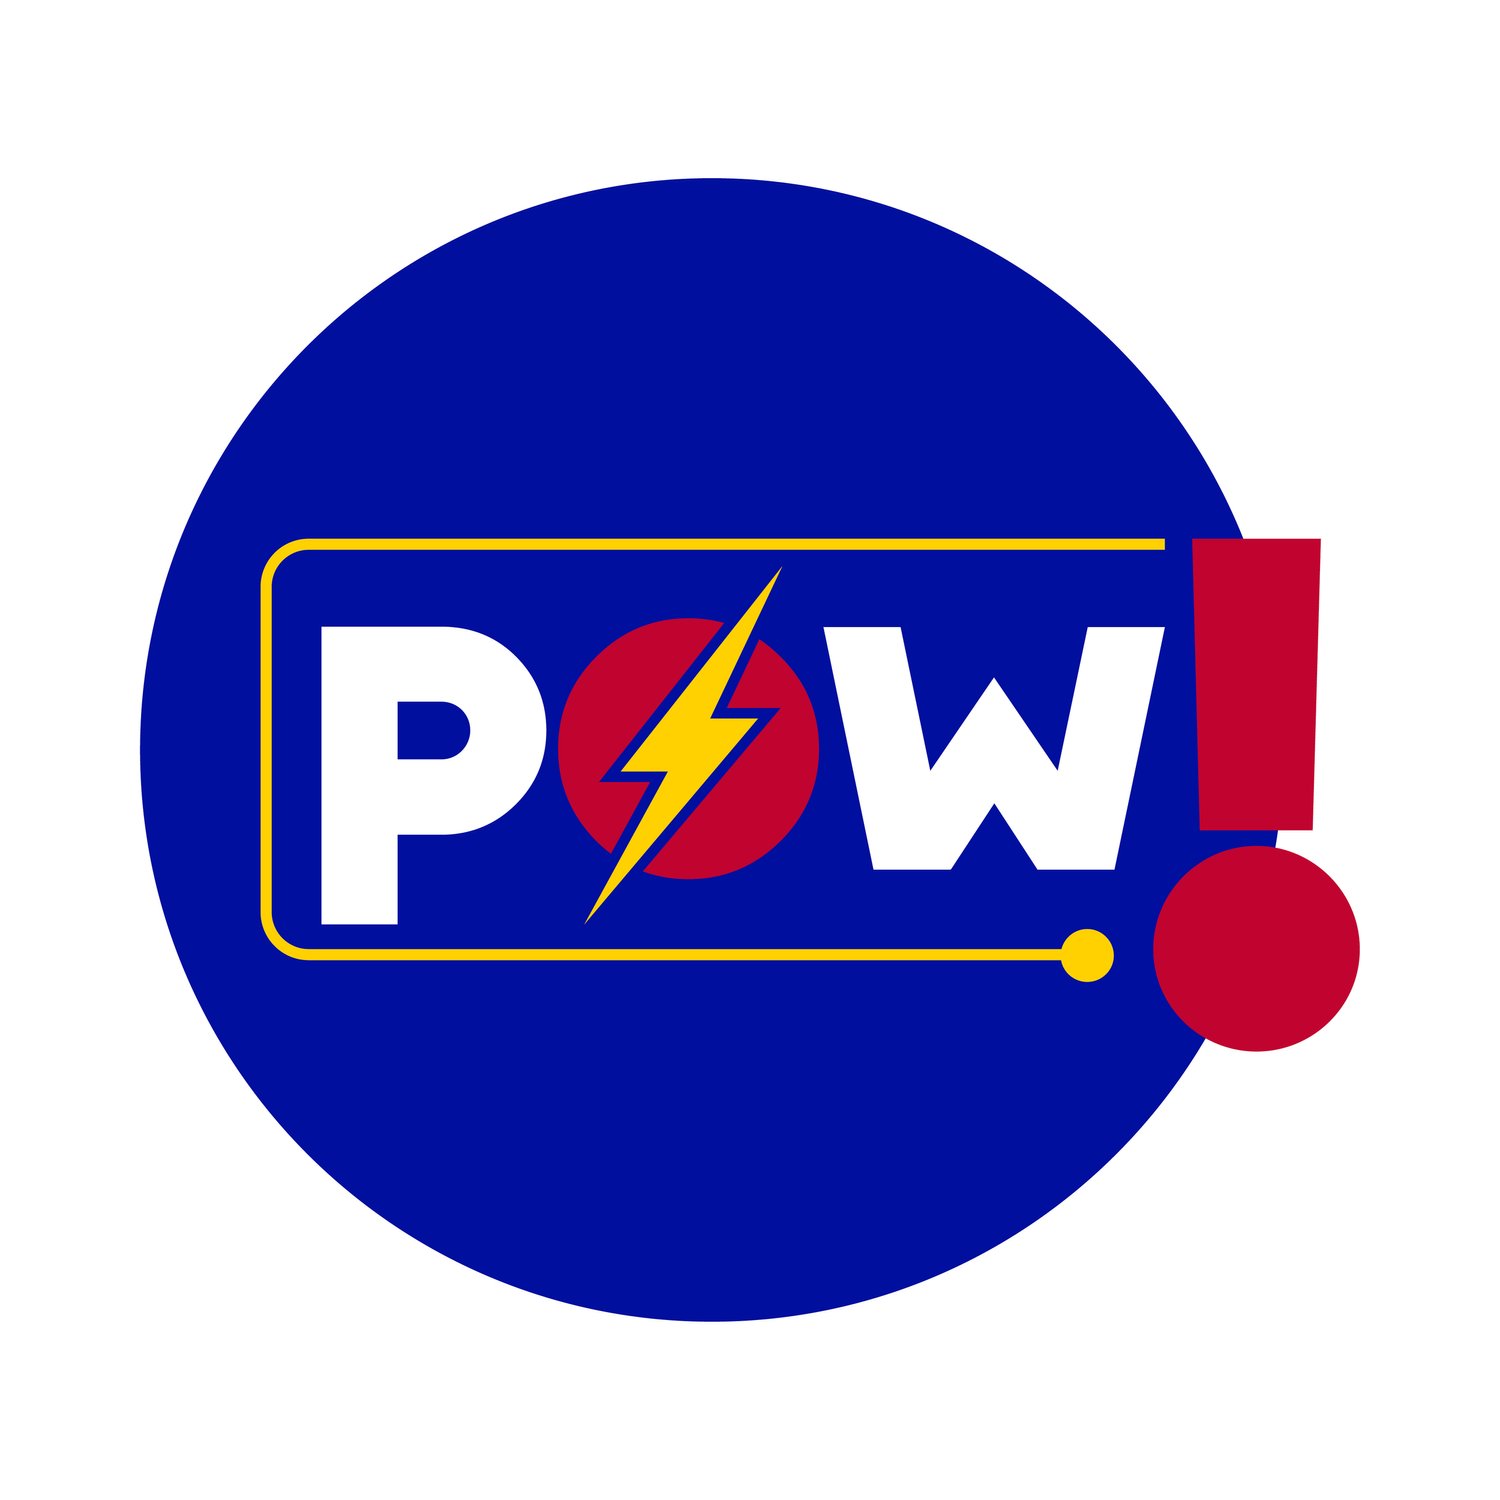 POW - Power Of We!